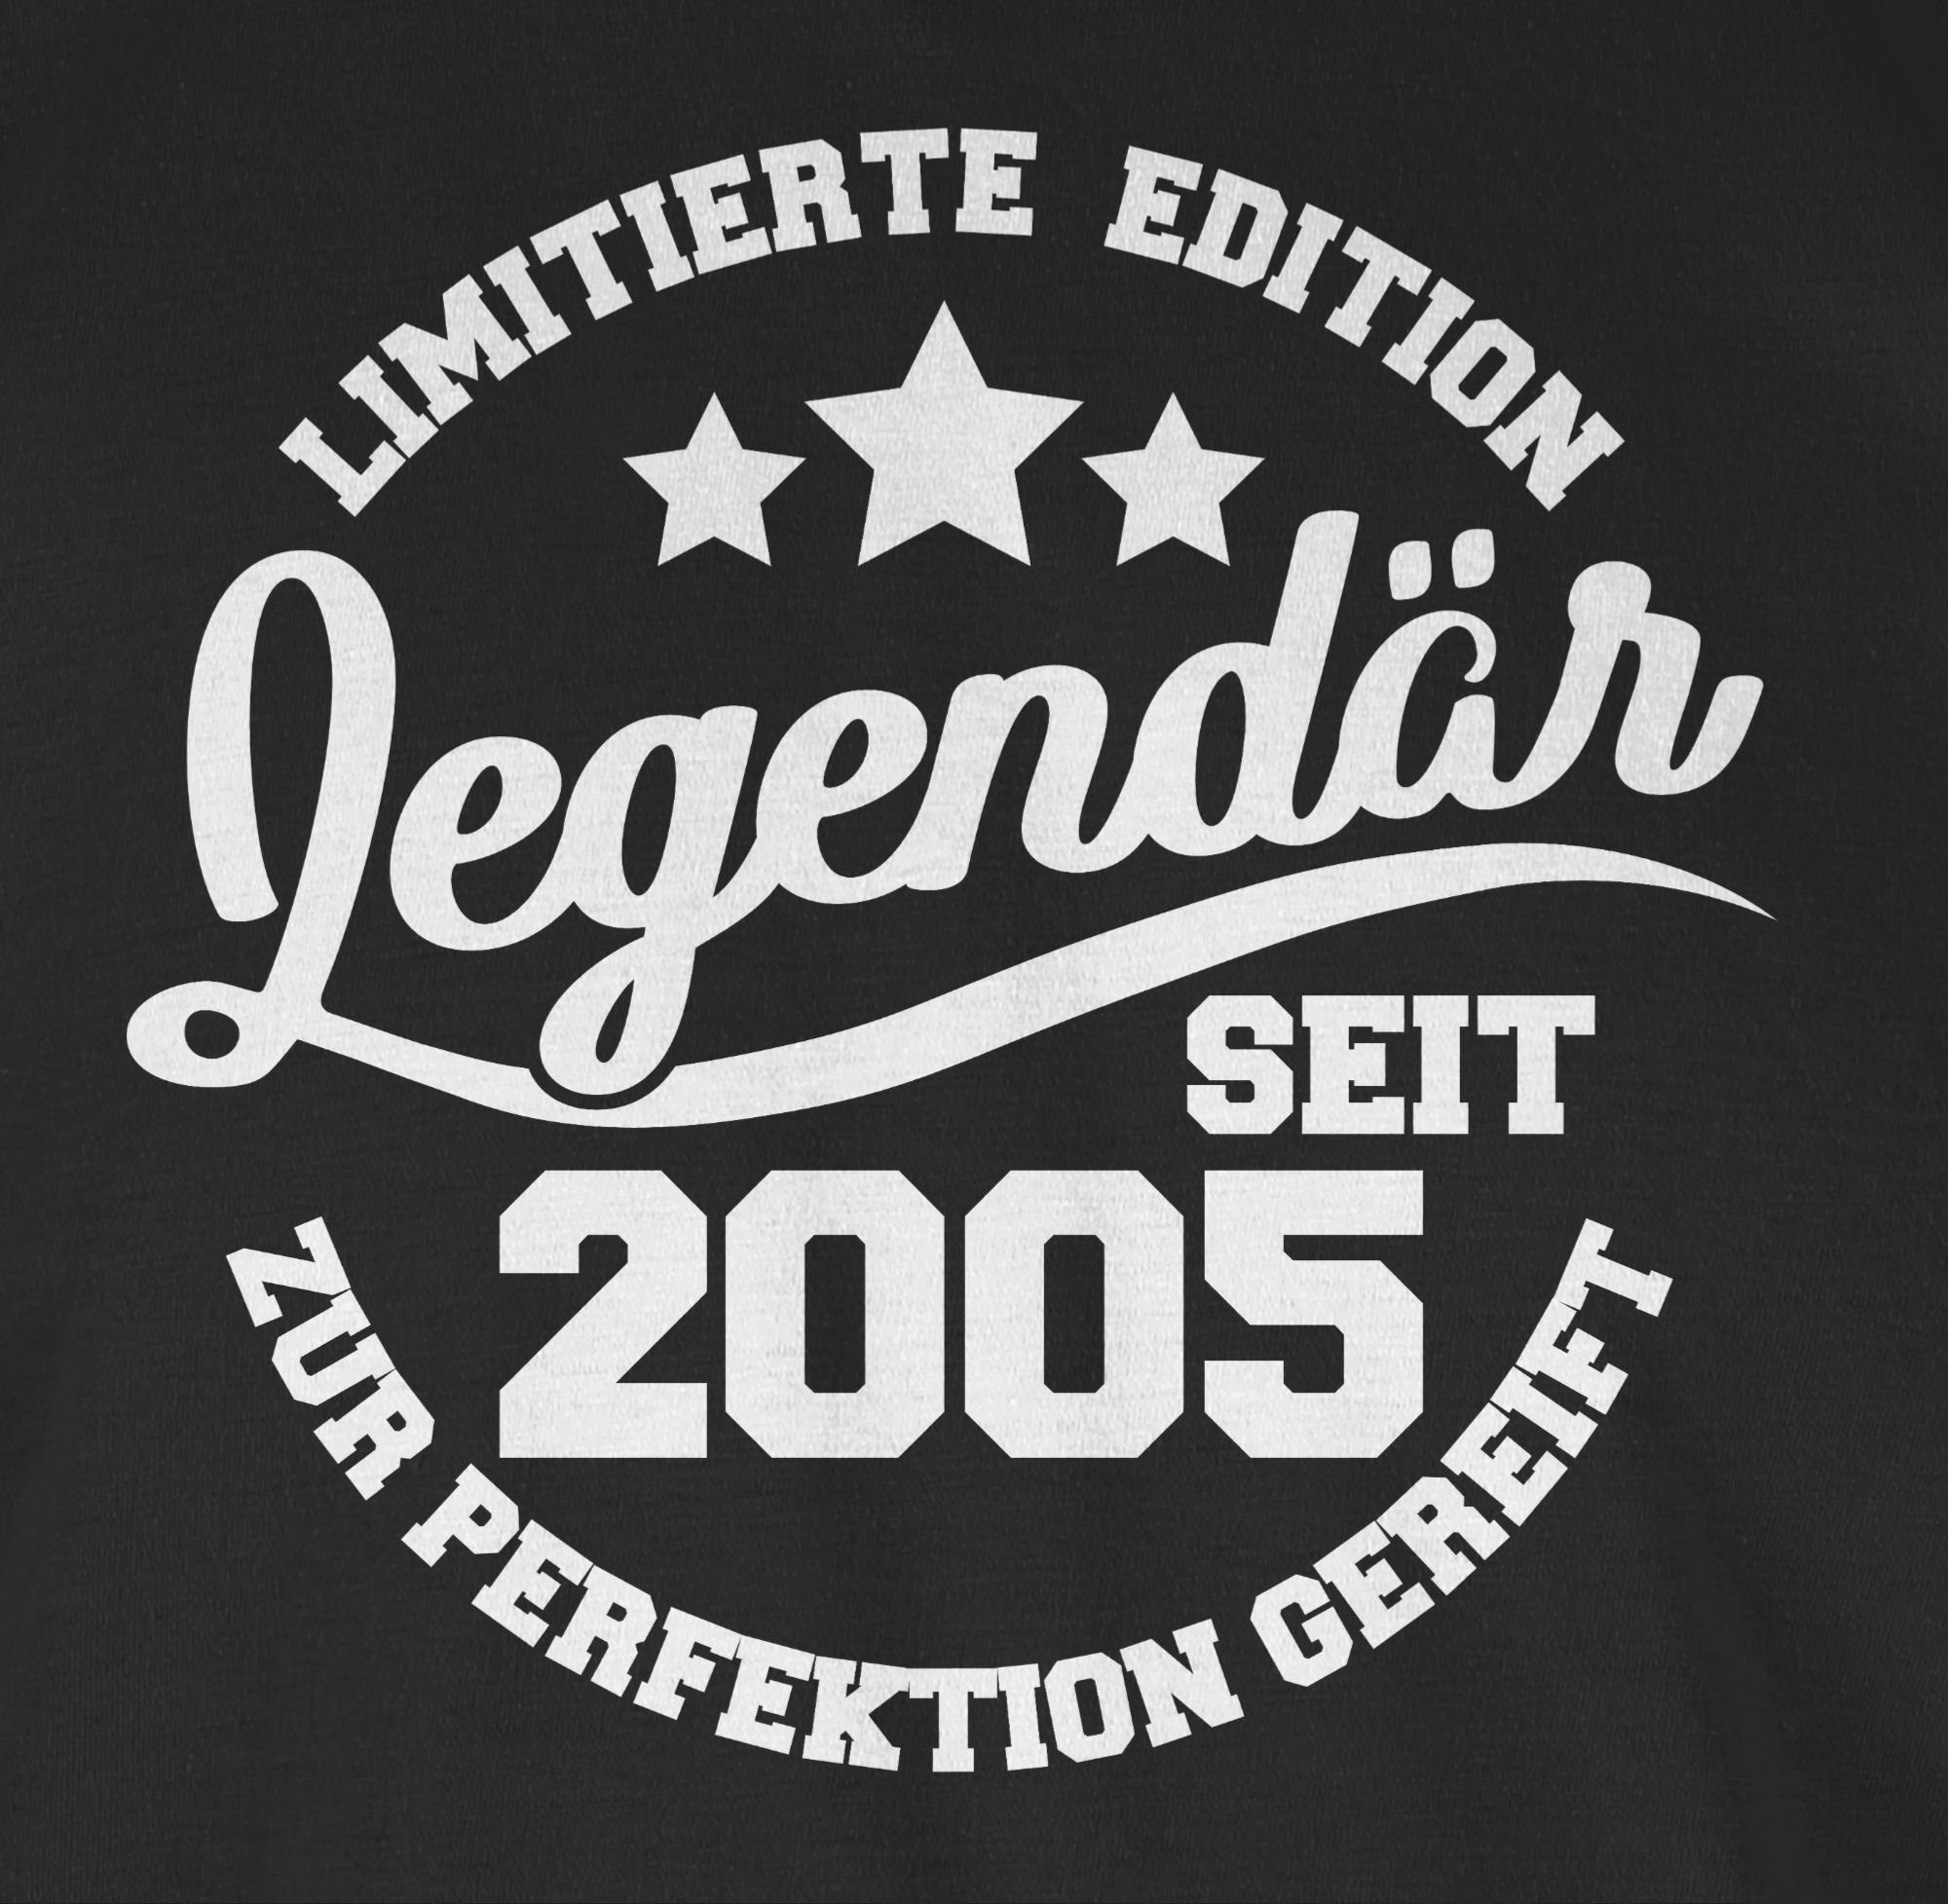 1 Geburtstag 18. seit Shirtracer T-Shirt Schwarz Legendär 2005